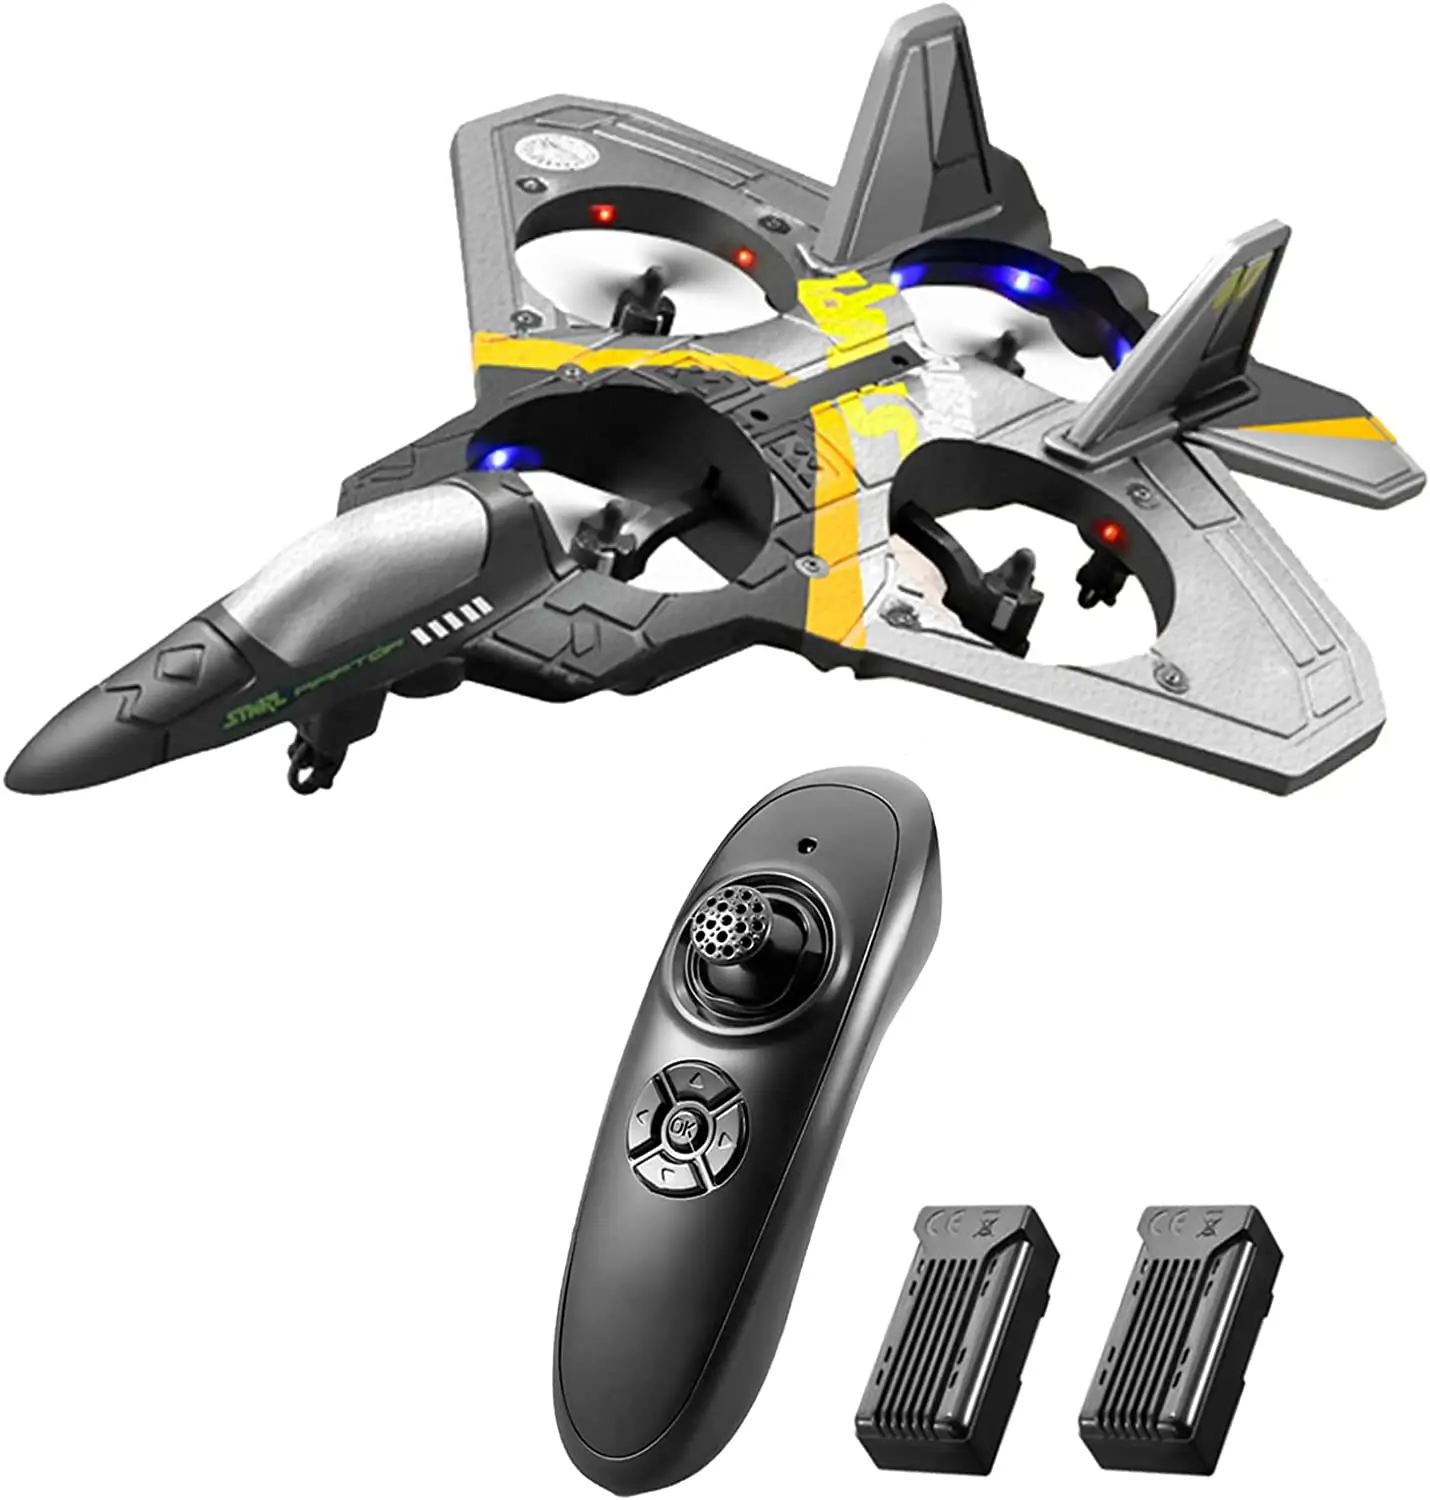 वयस्कों के लिए 2.4GHz हवाई जहाज आर सी विमान रिमोट कंट्रोल खिलौने गुरुत्वाकर्षण स्टंट रोल विमान रेडियो नियंत्रण खिलौने ग्लाइडर